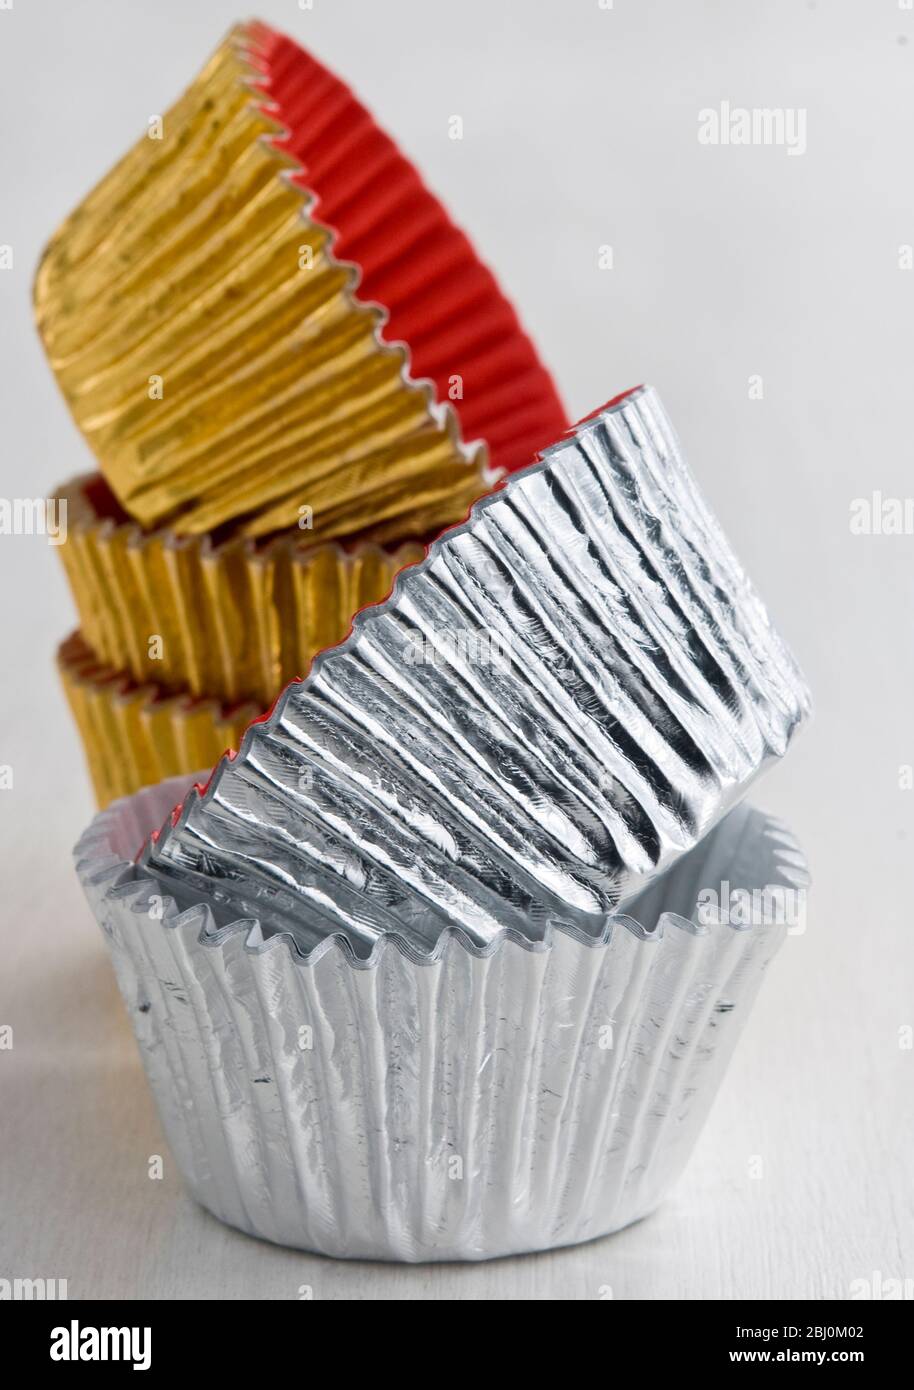 Stapel von dekorativen Metallfolie Kuchen und Muffin-Fällen - Stockfoto